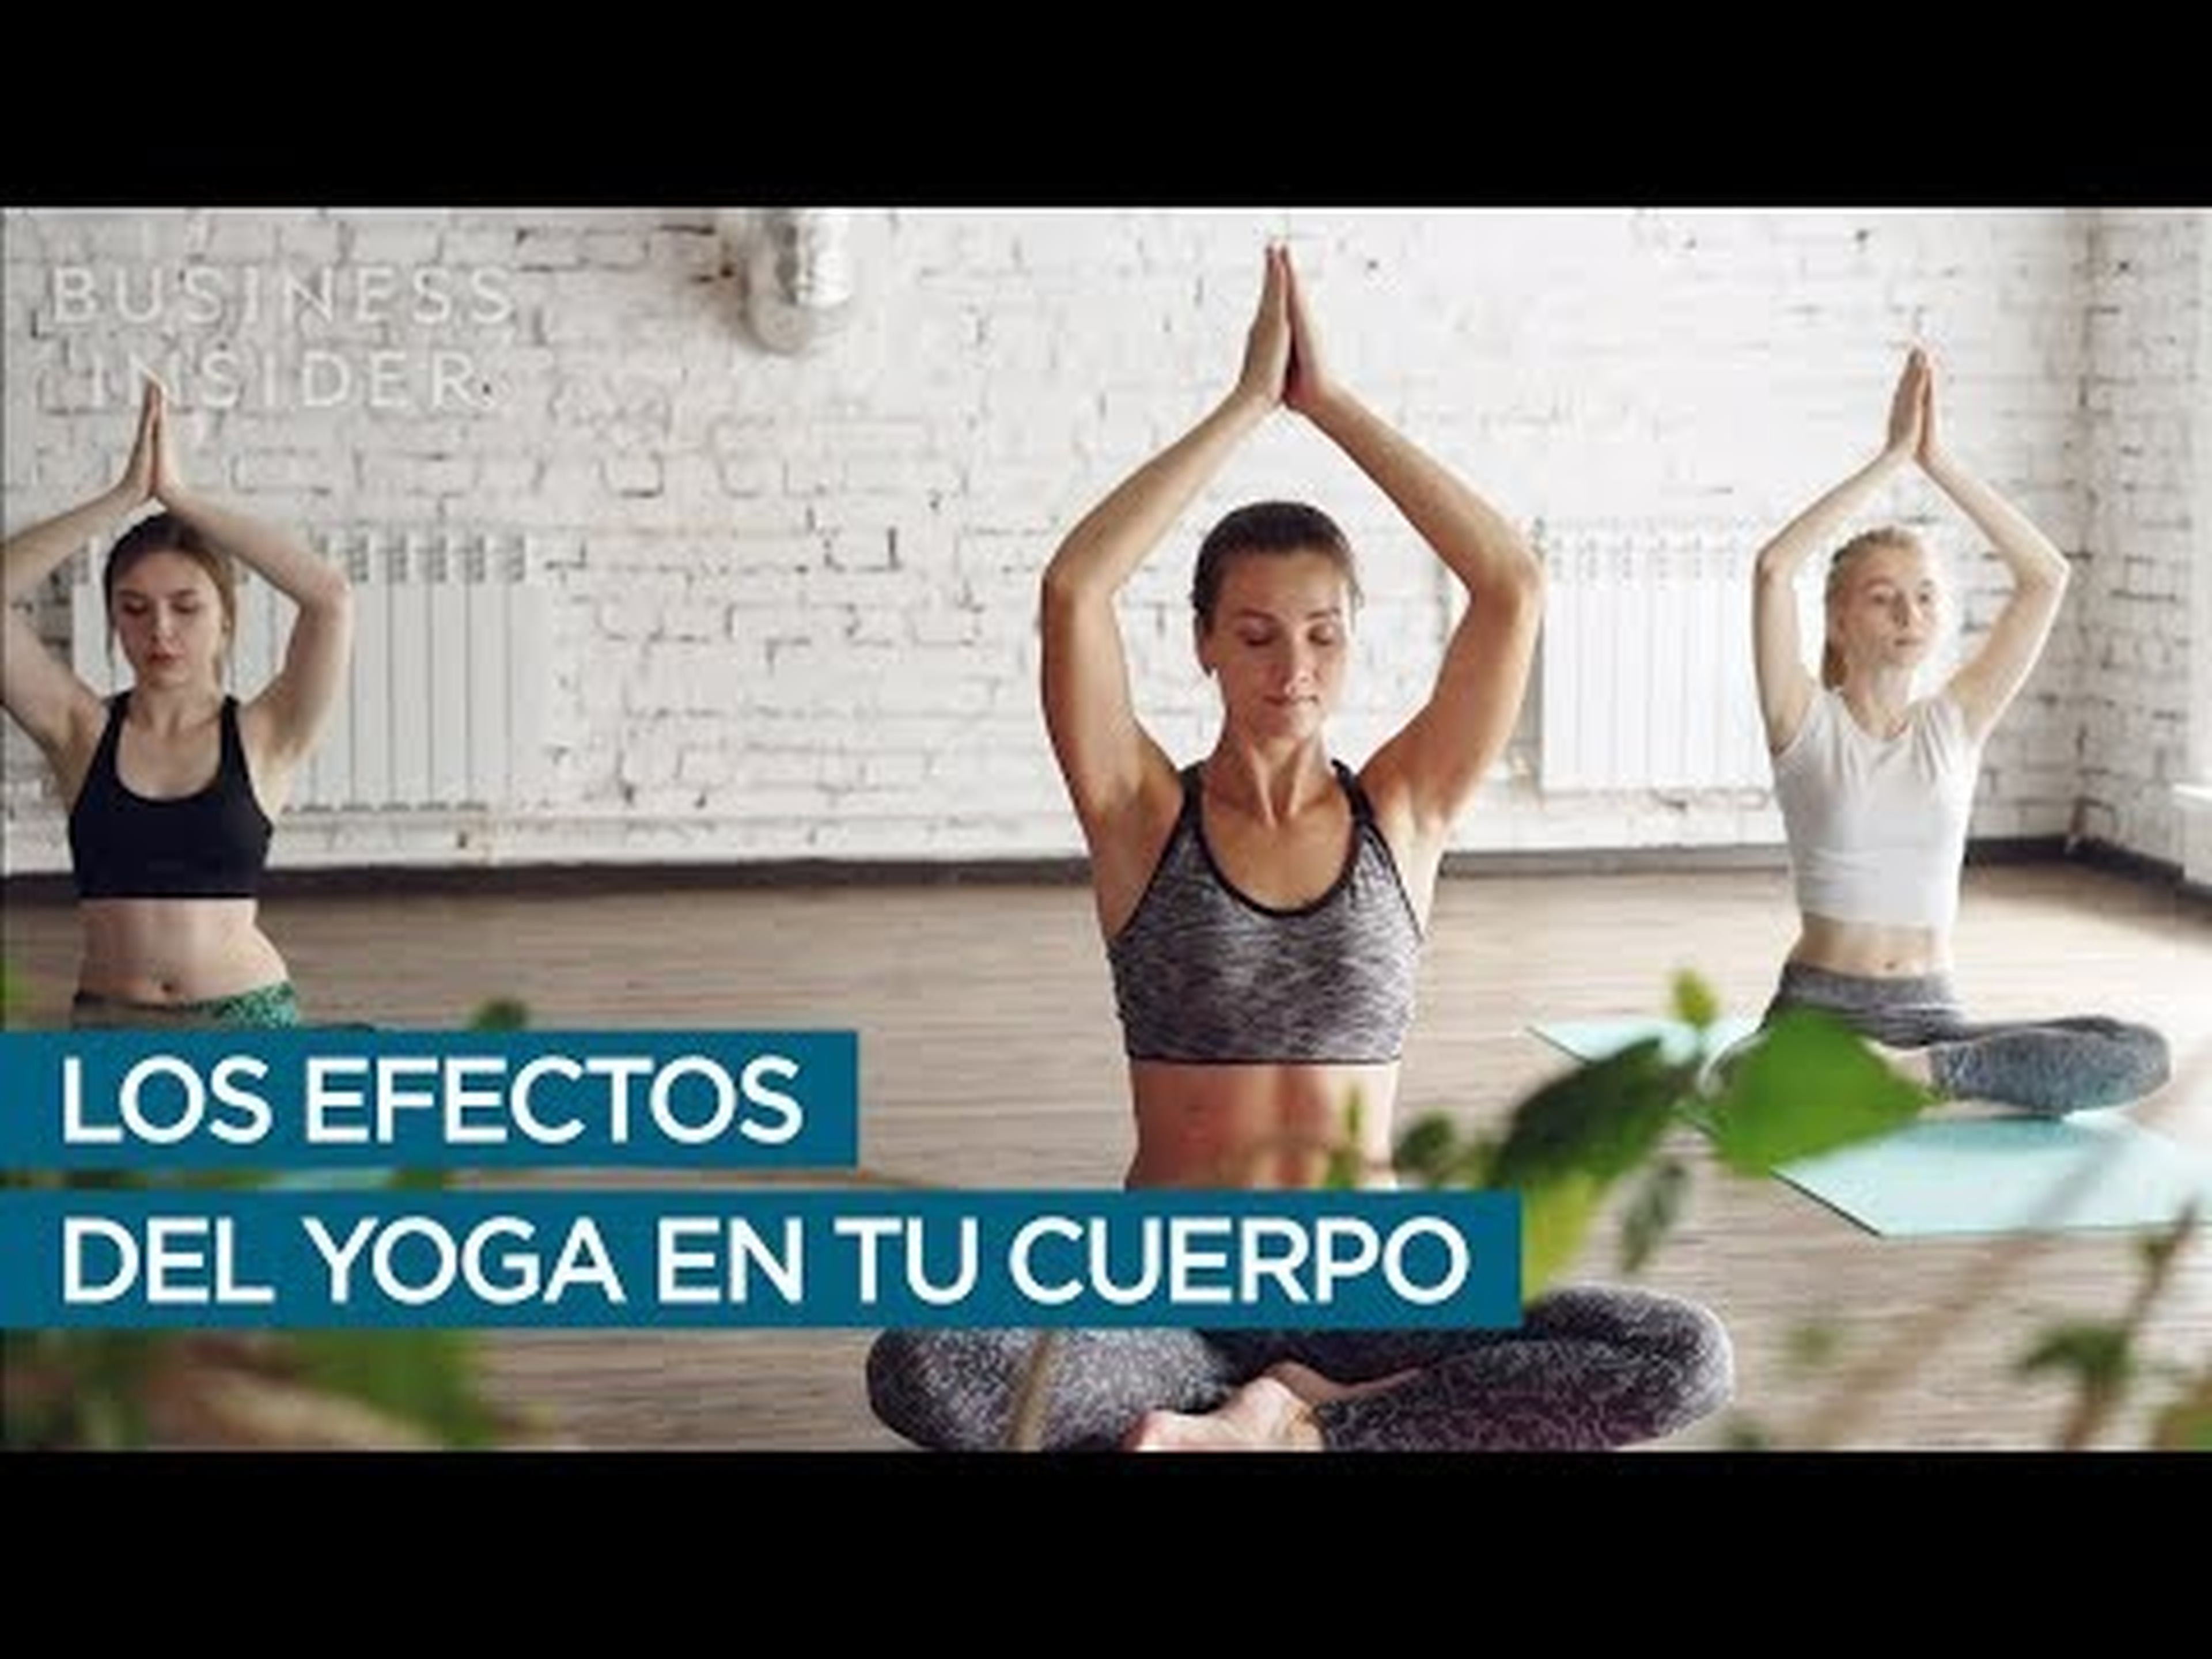 Los efectos del yoga en tu cuerpo